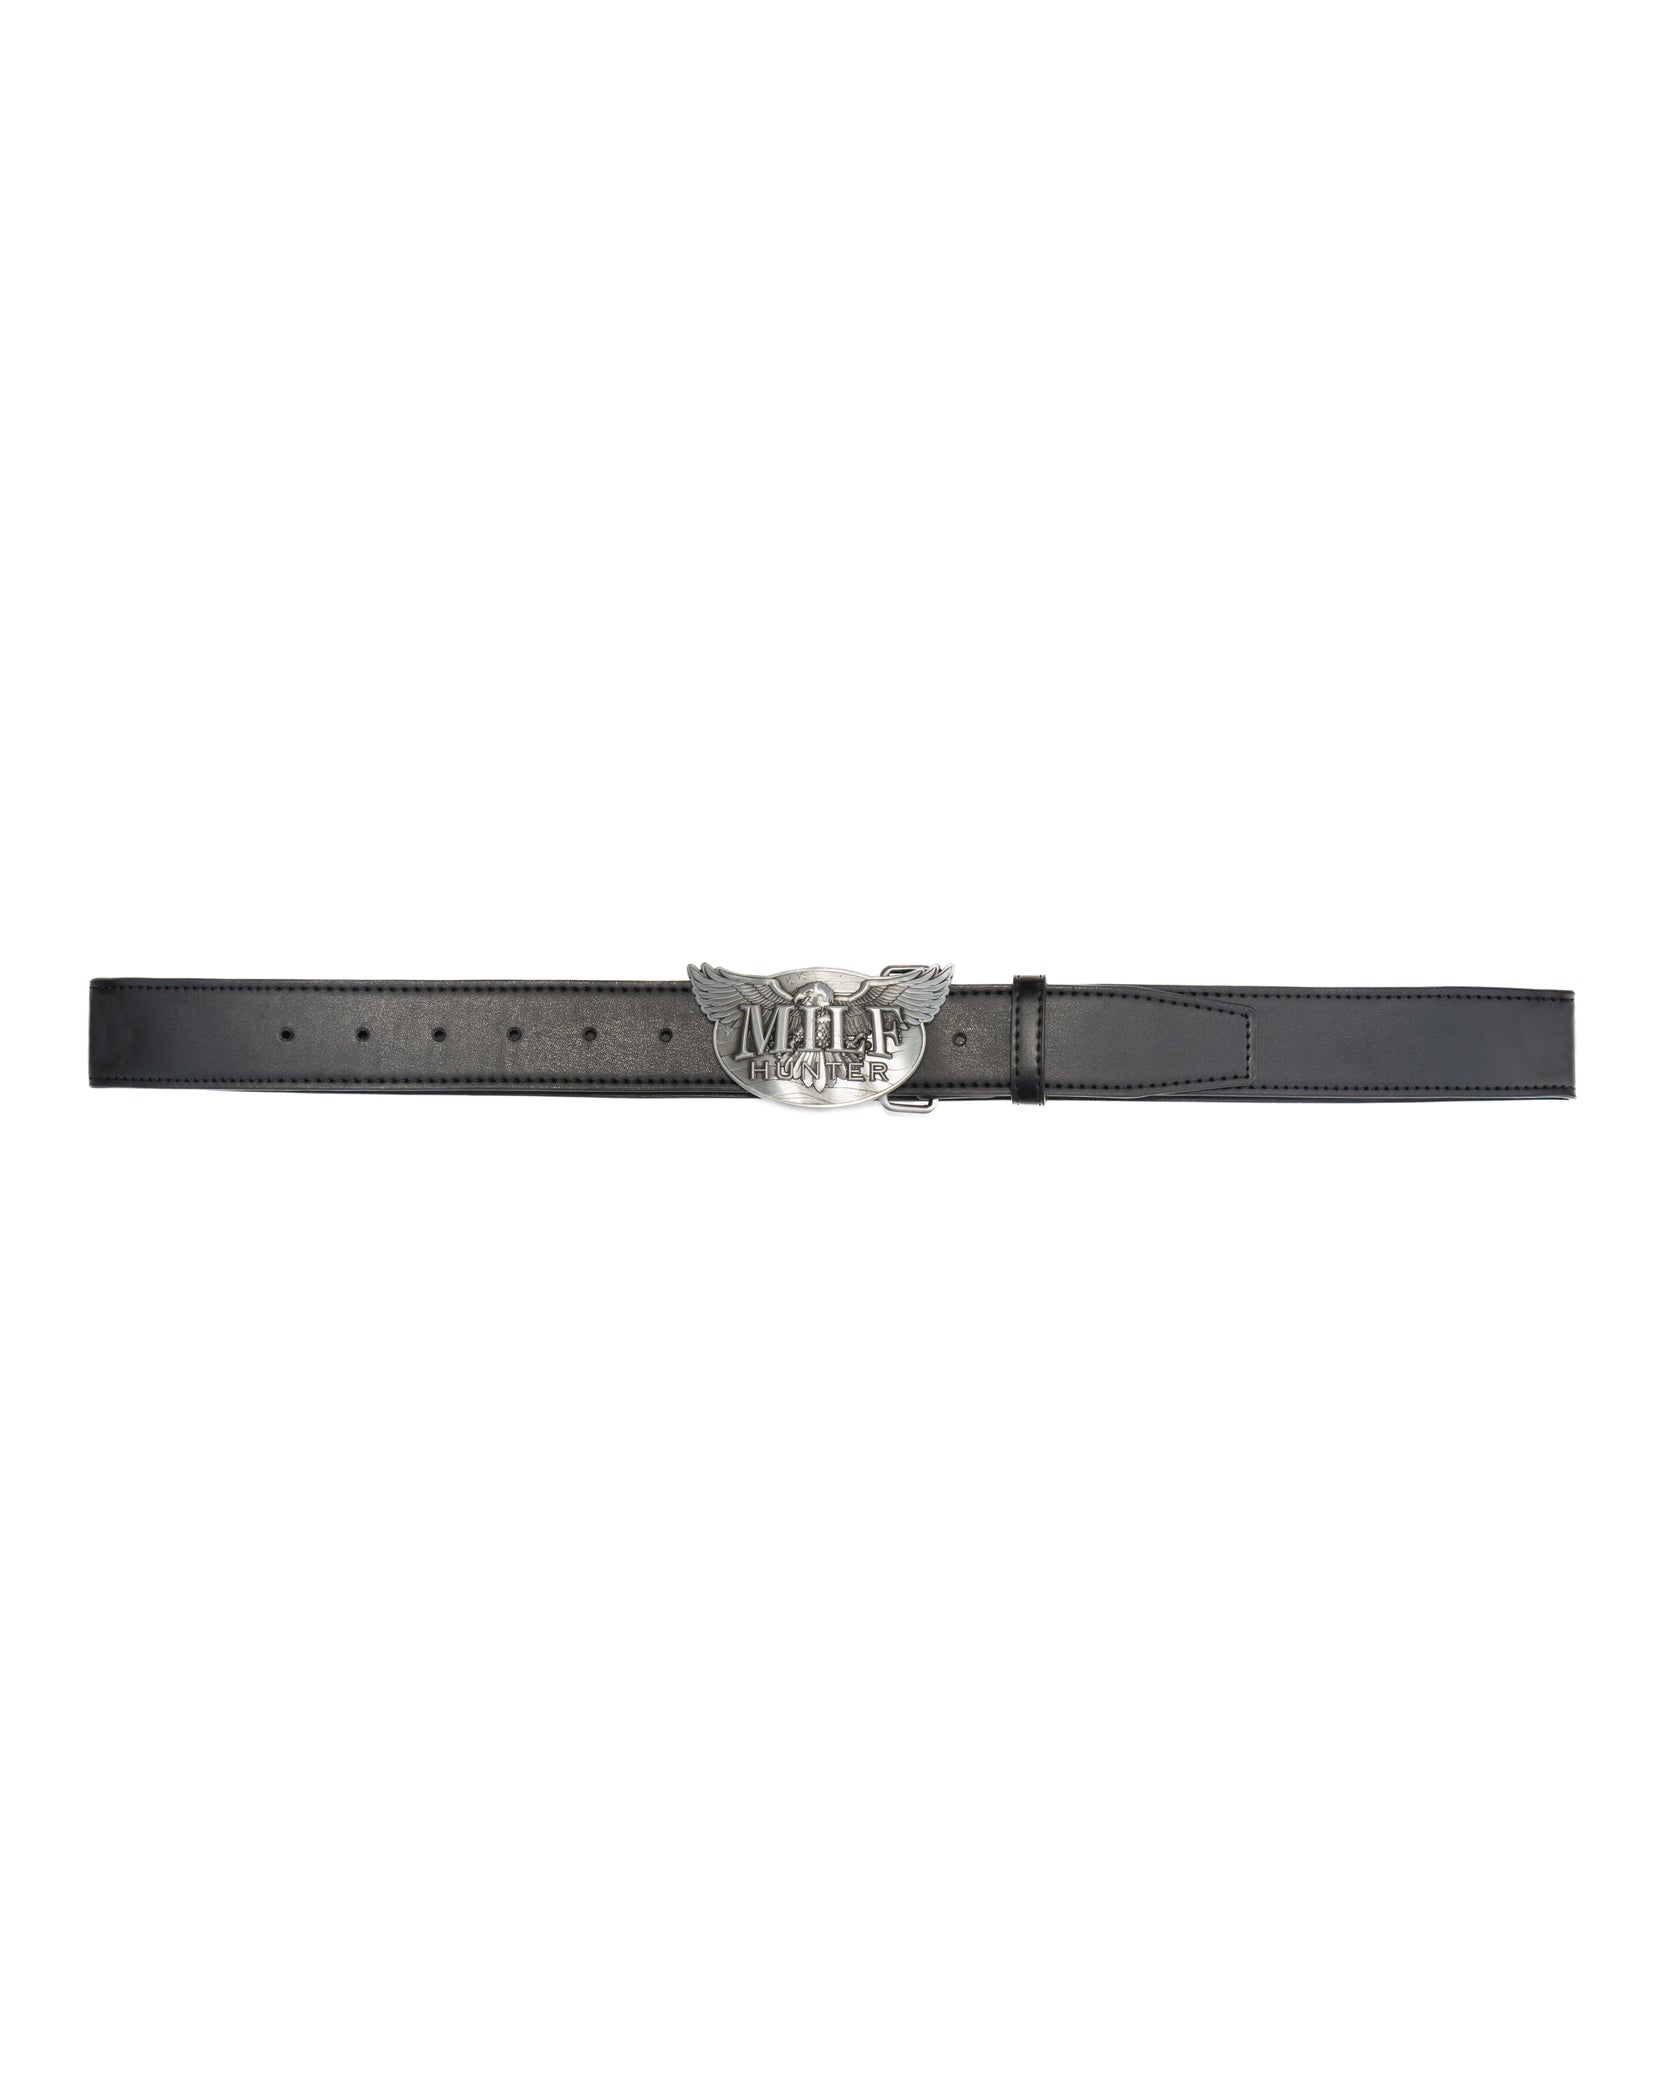 MlLF Hunter Leather Belt - Black / Silver